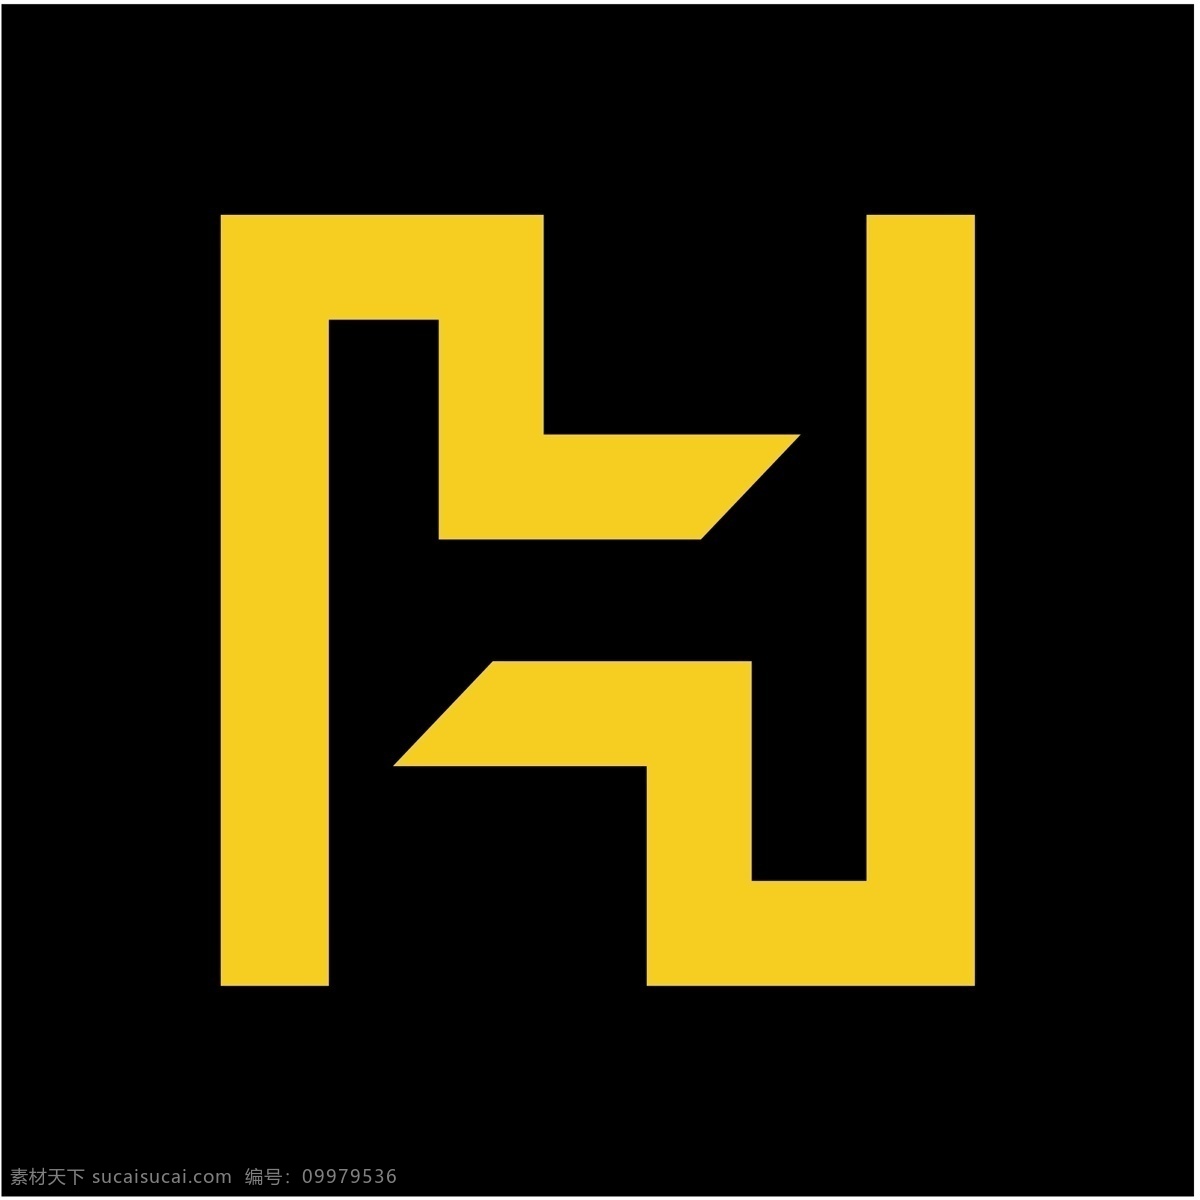 海恩斯的设计 海恩斯 自由 标识 标志 黑色